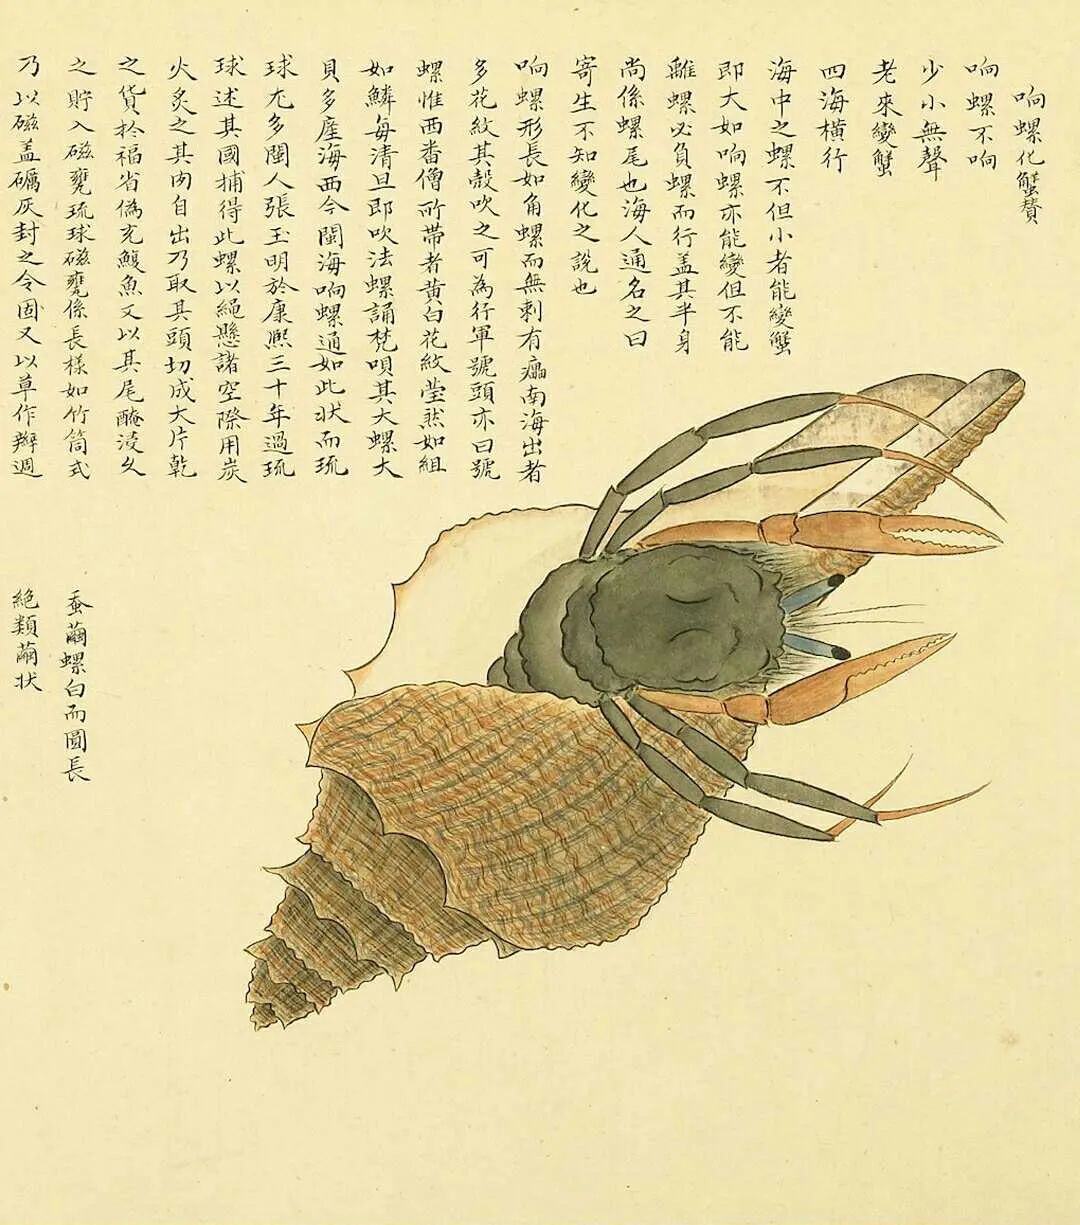 清代画家聂璜绘制的《海错图》,记载了或真实或光怪陆离的海洋生物